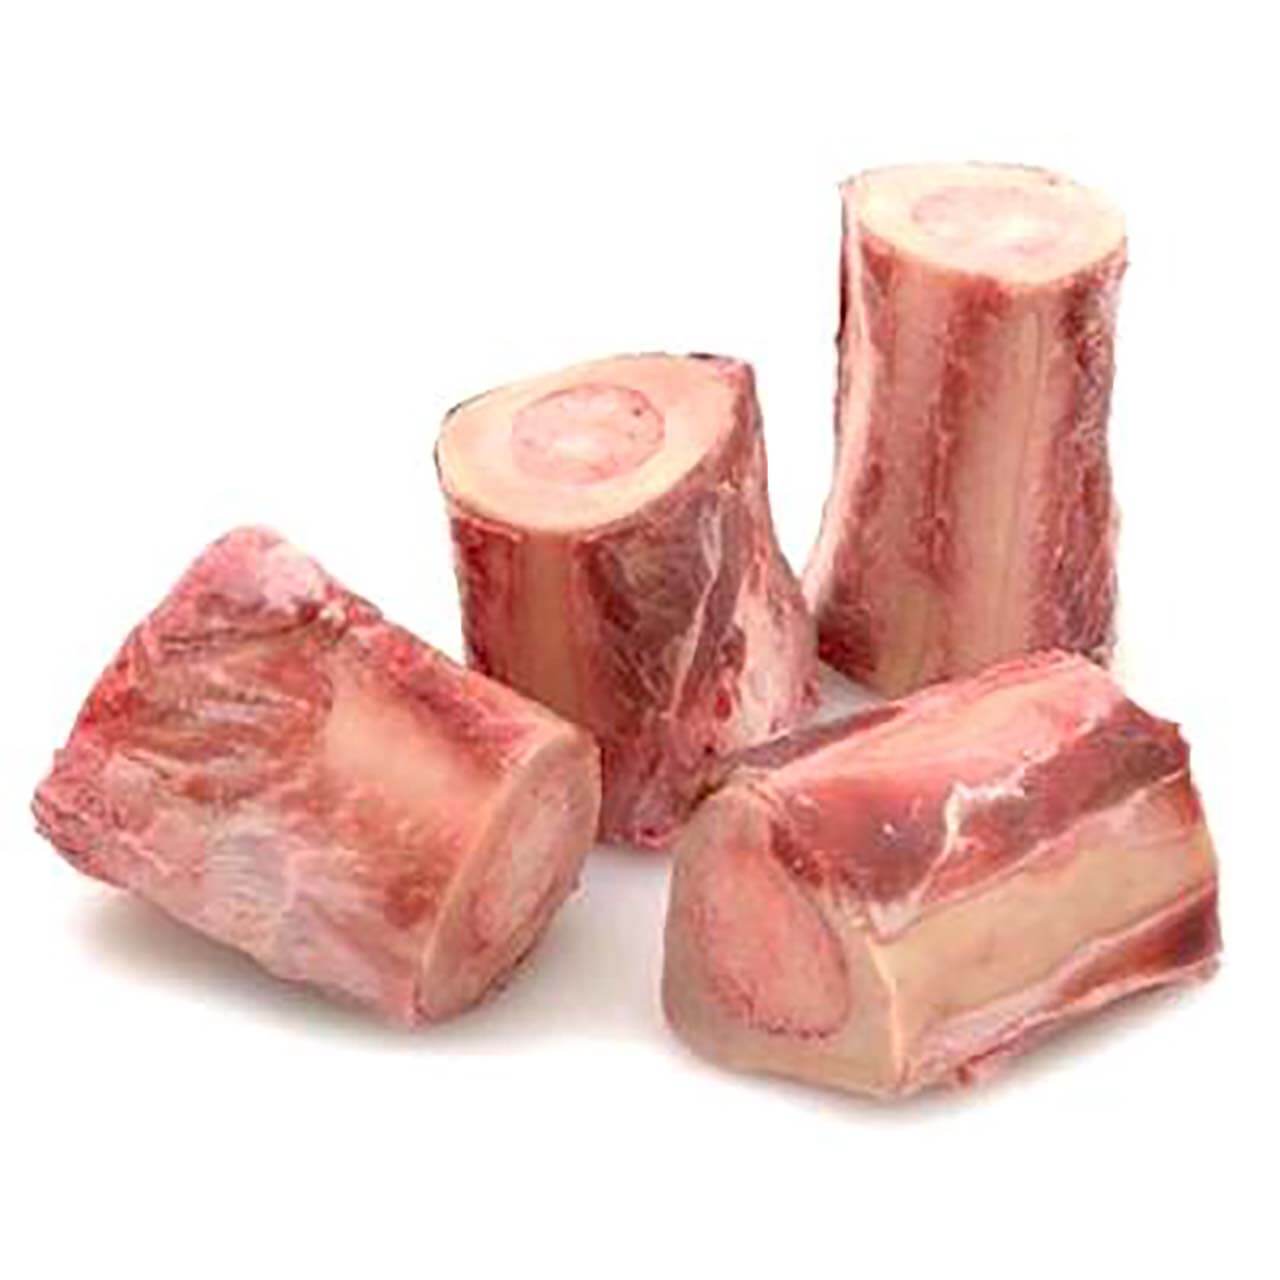 Beef Soup Bones - Organic